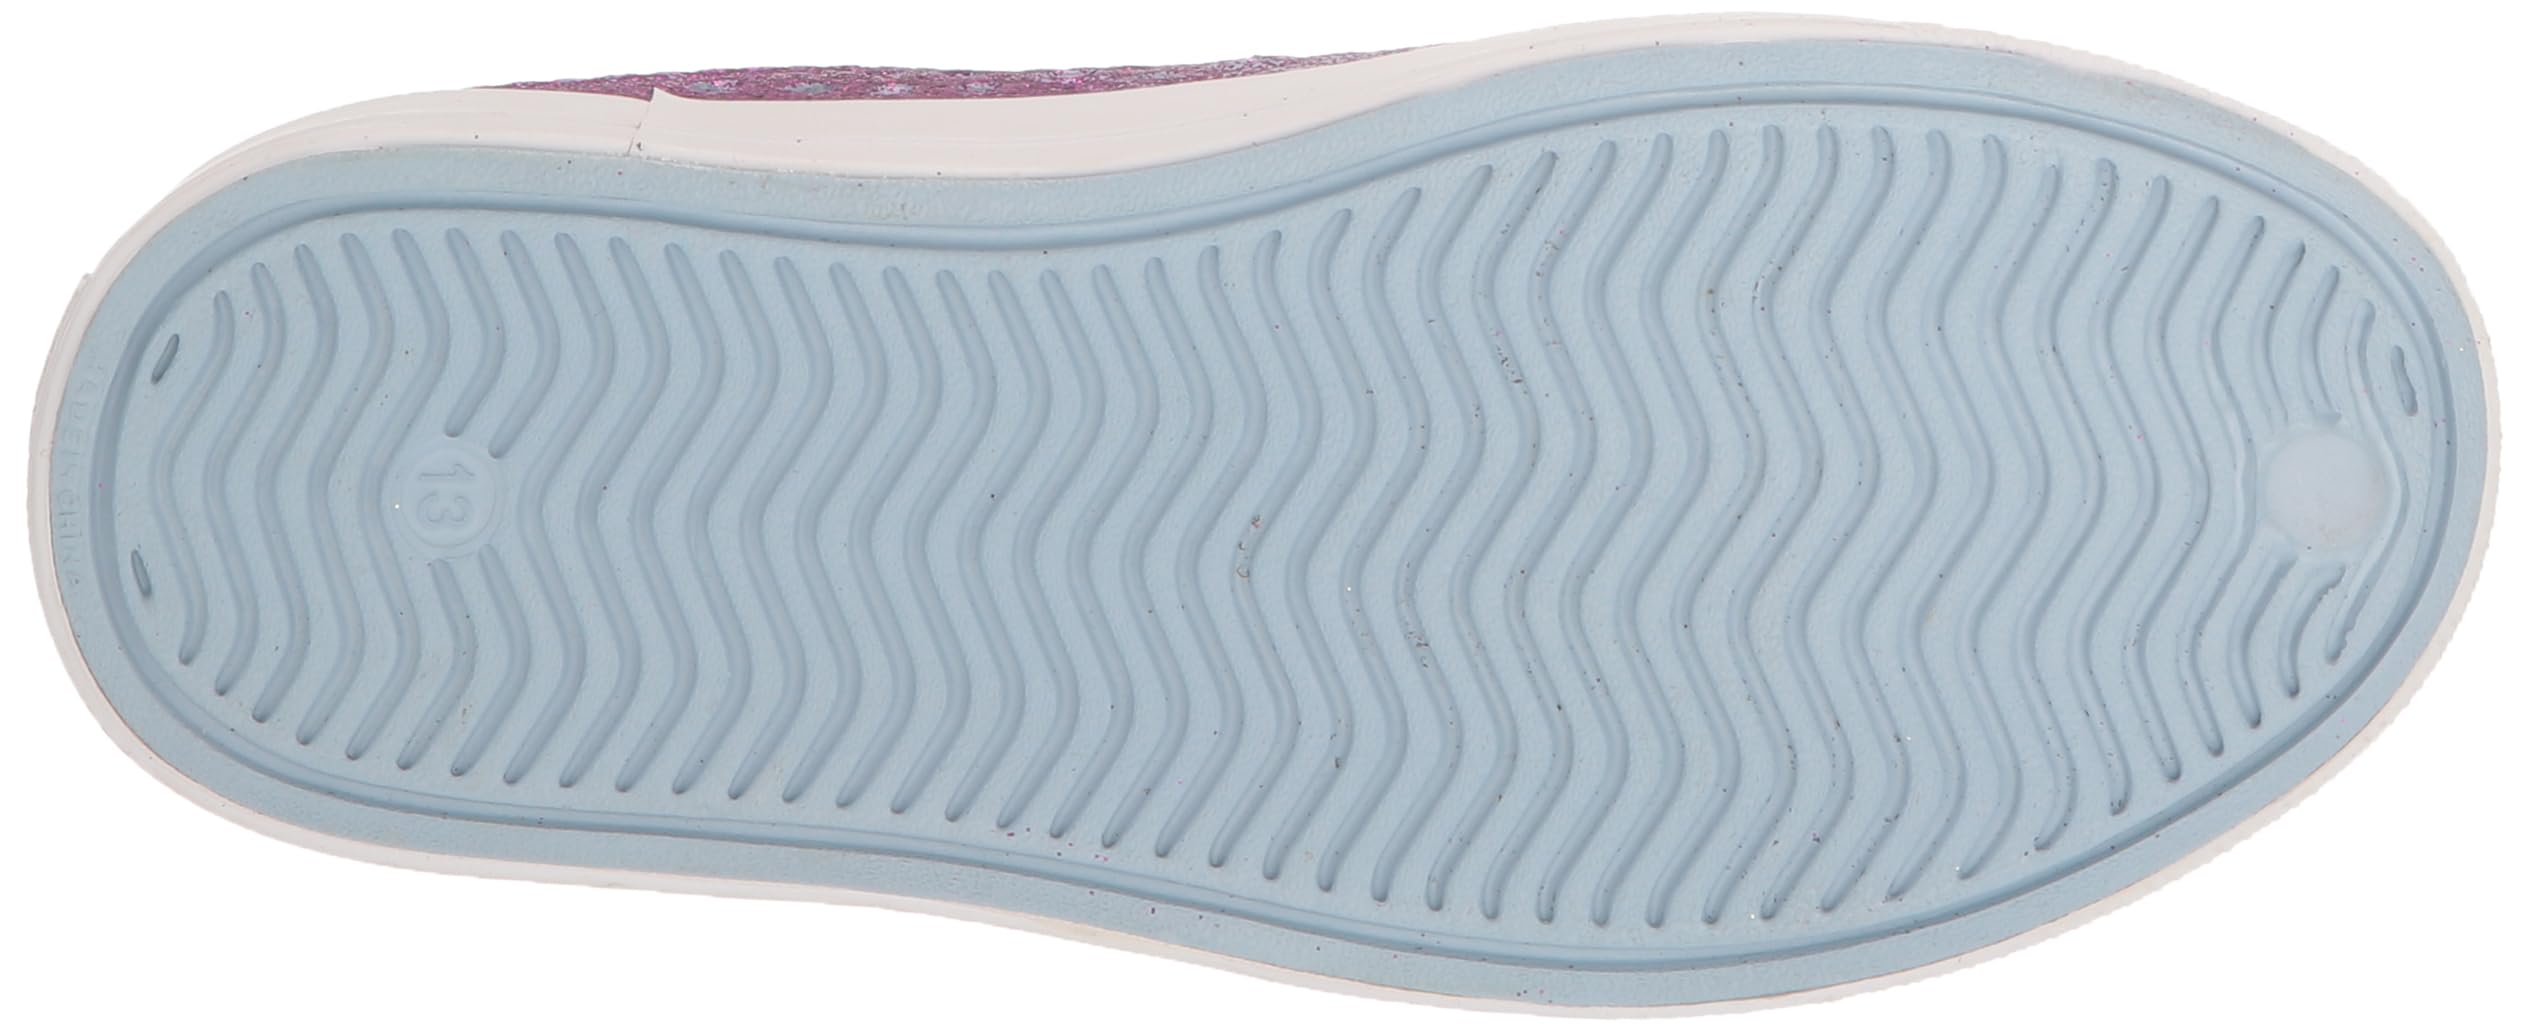 Skechers Girl's Foamies Guzman Steps-Glitterland Water Shoe Sneaker